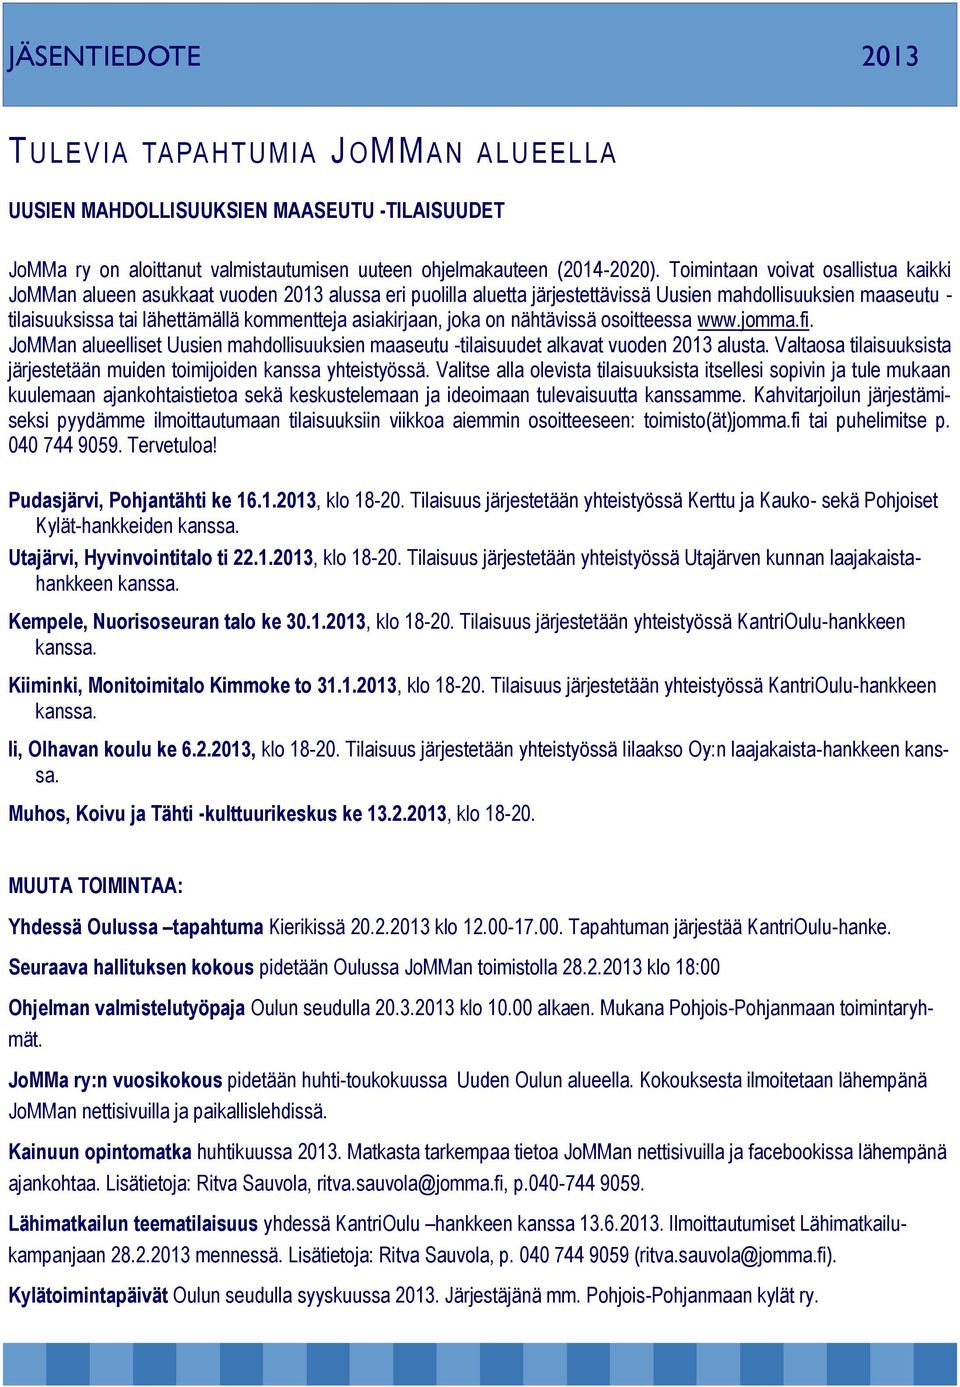 asiakirjaan, joka on nähtävissä osoitteessa www.jomma.fi. JoMMan alueelliset Uusien mahdollisuuksien maaseutu -tilaisuudet alkavat vuoden 2013 alusta.